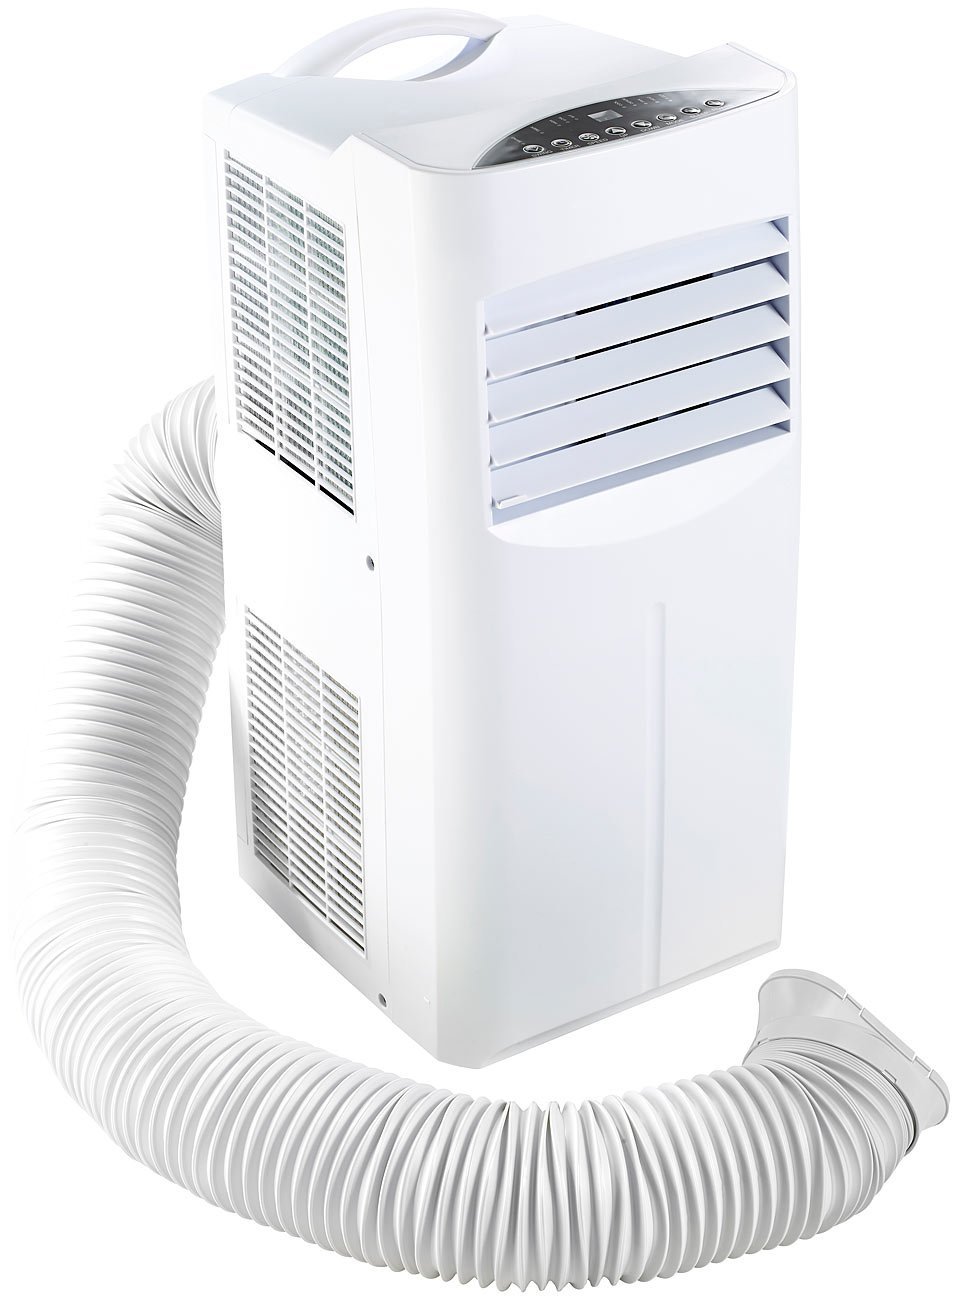 Klimagerät 9000 btu – Klimaanlage und Heizung